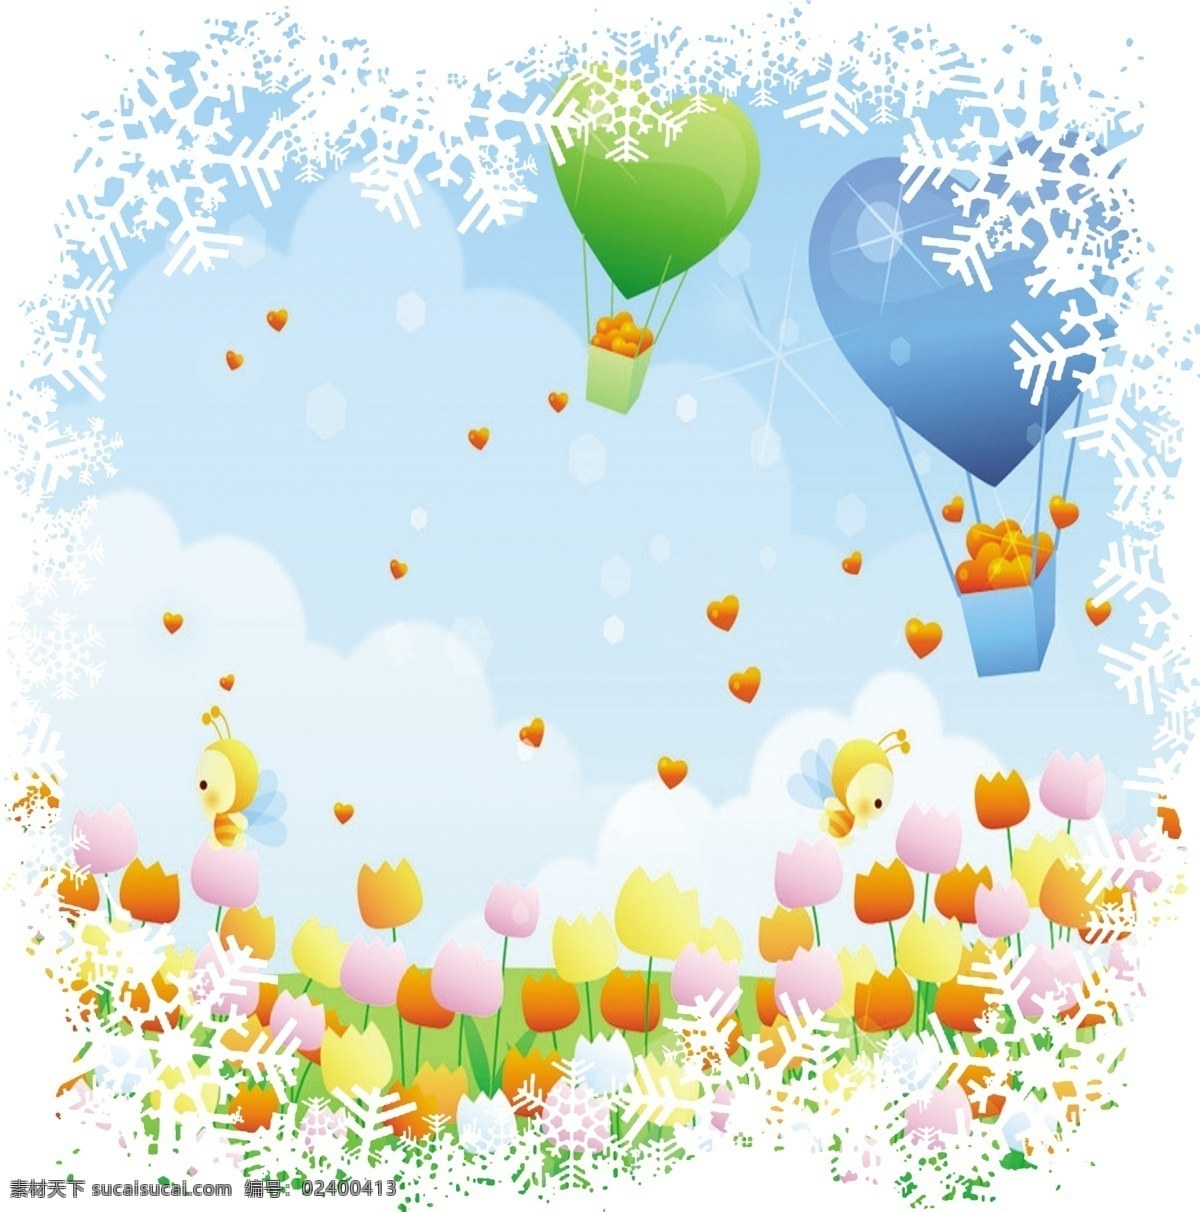 雪花 边框 爱心 蜜蜂 花 热气球 背景 可爱 心型 花朵 梦幻 温馨 粉红 分层 广告设计模板 源文件